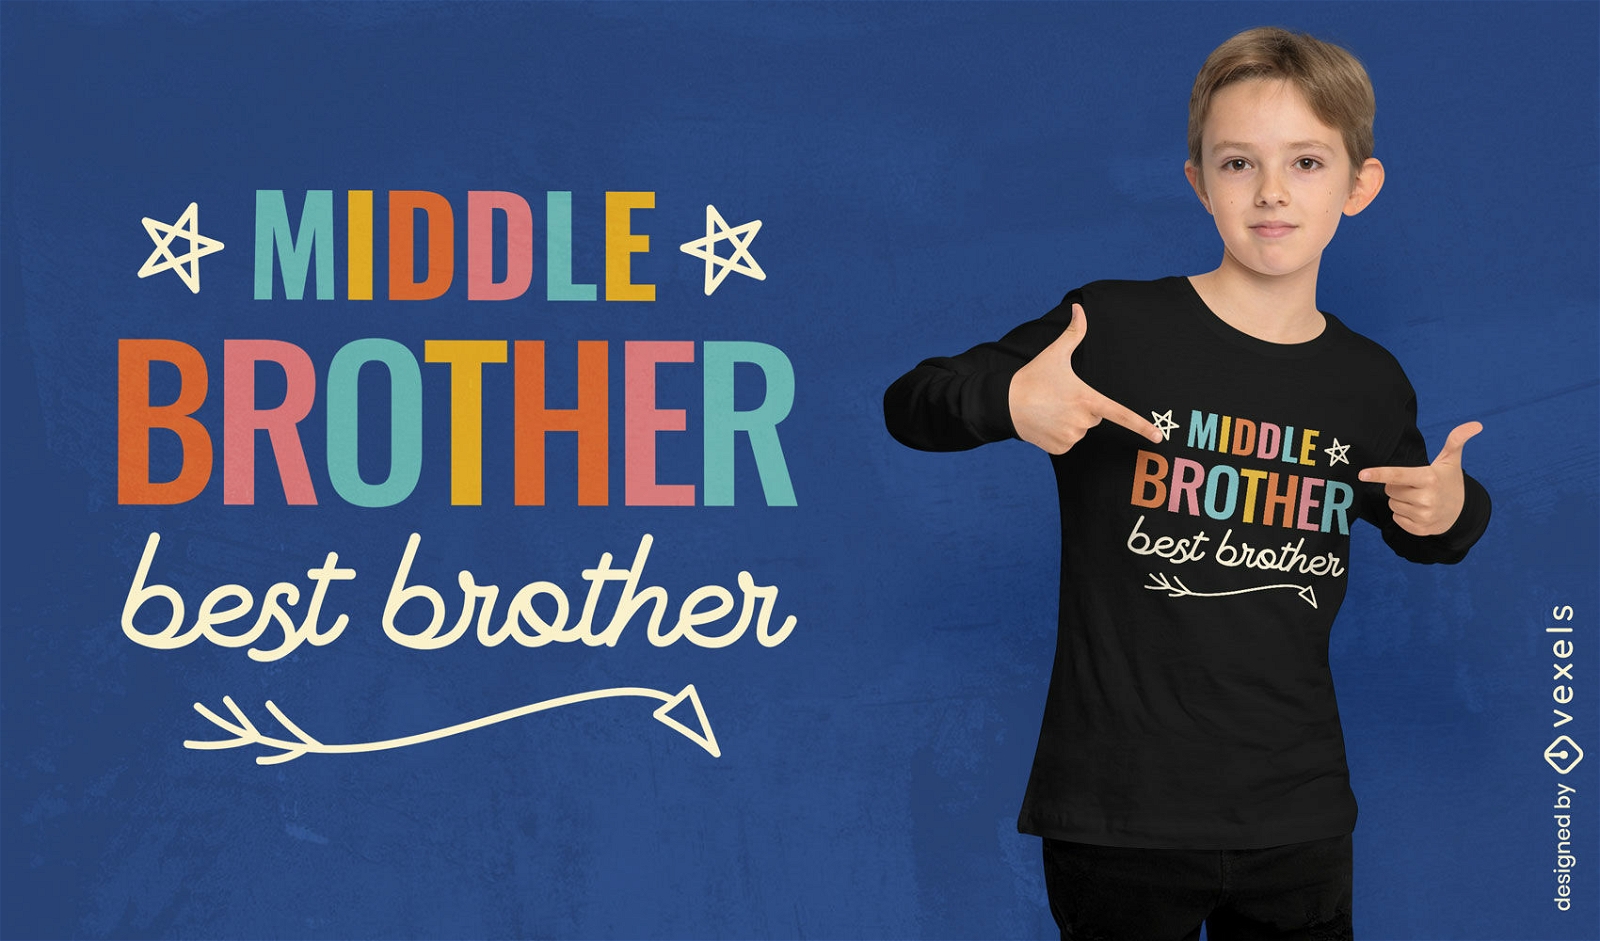 Dise?o de camiseta de hermano medio mejor hermano